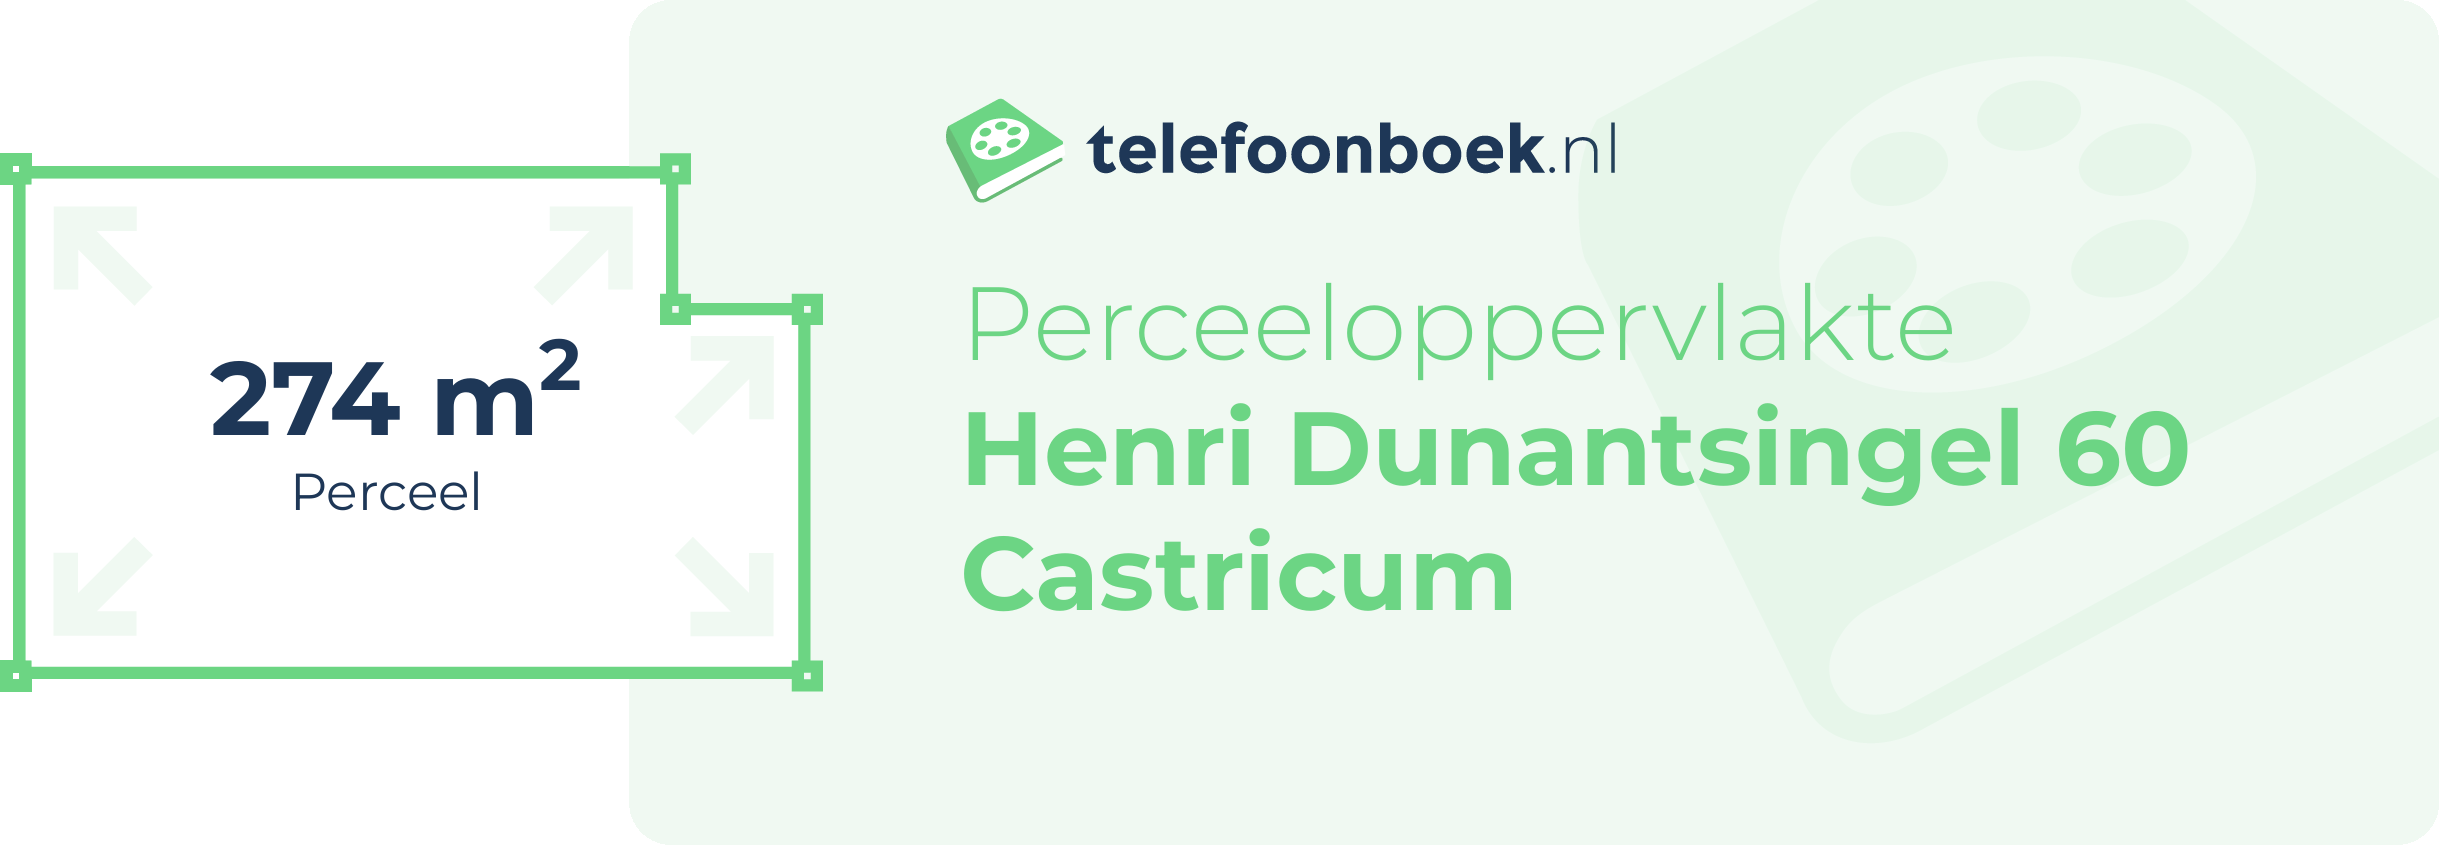 Perceeloppervlakte Henri Dunantsingel 60 Castricum